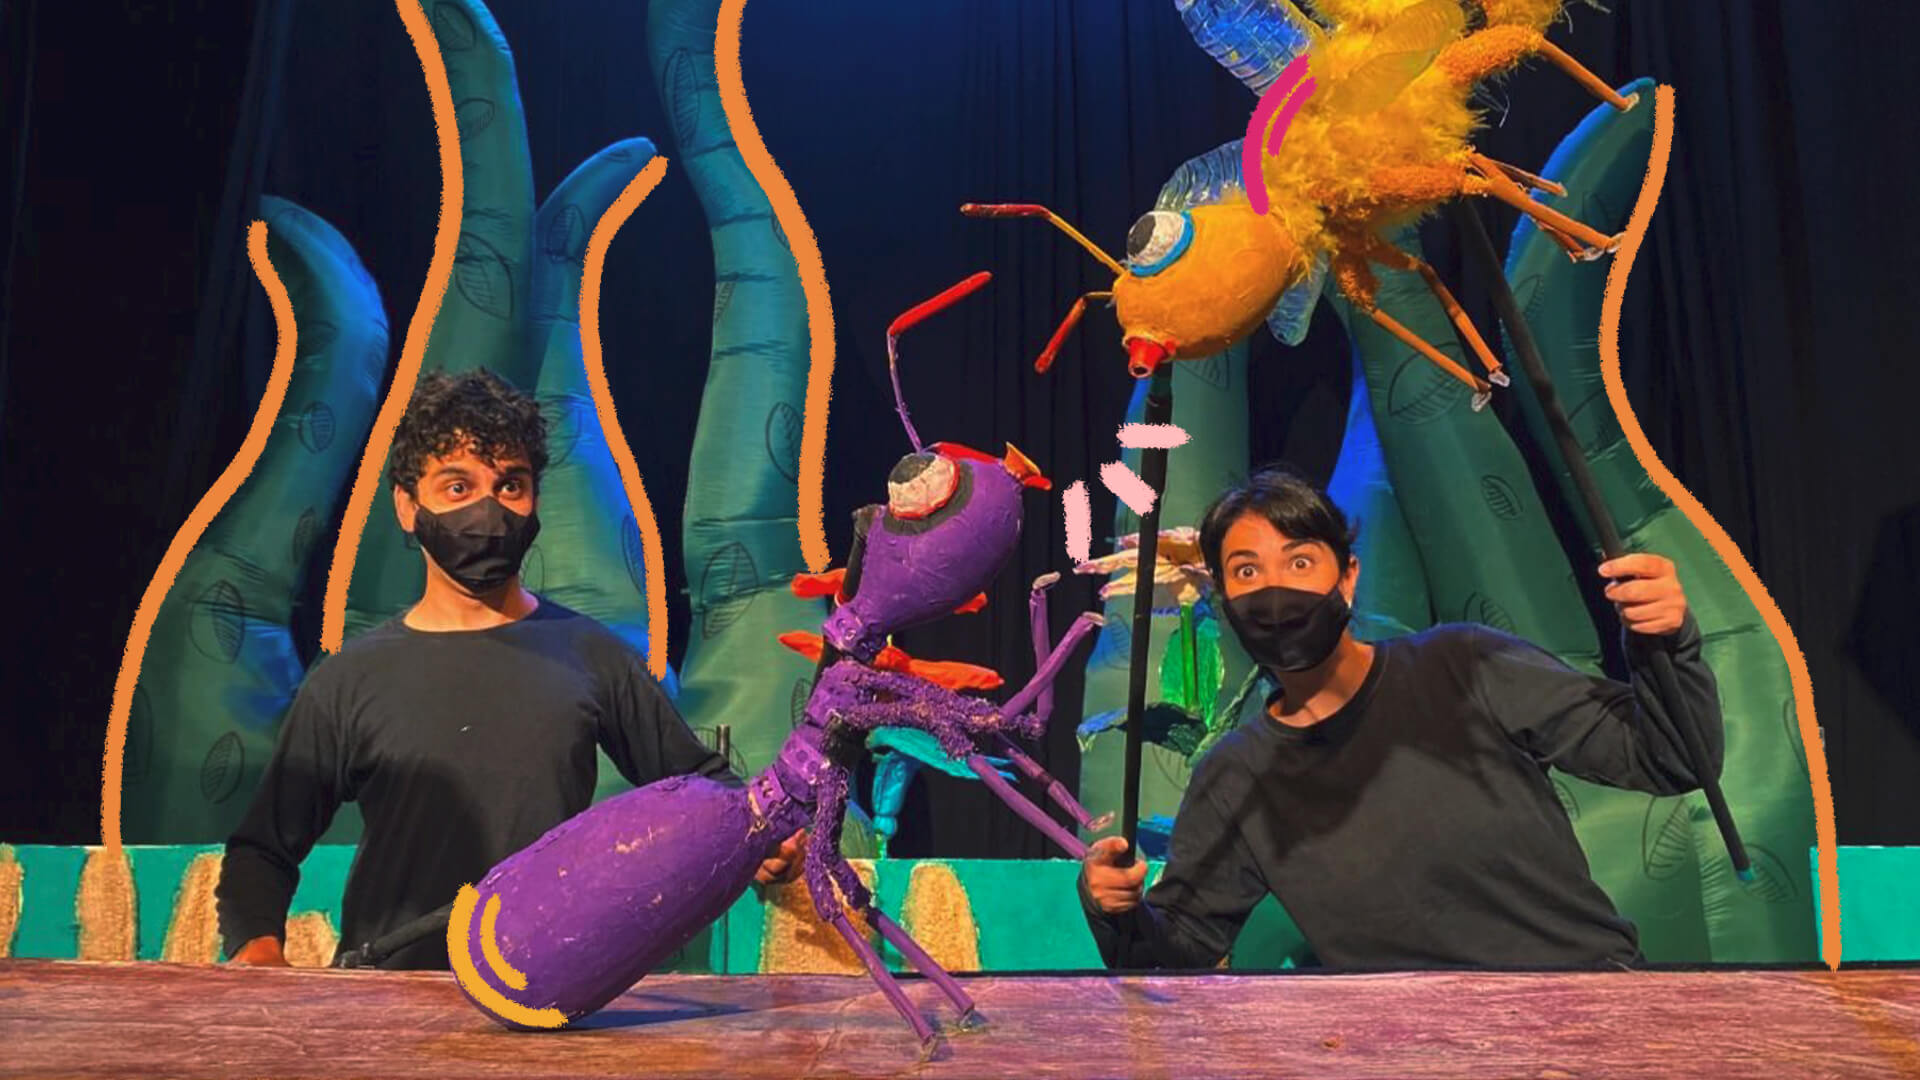 Na foto, um ator e uma atriz manipulam um boneco de uma formiga na cor roxa e de uma abelha amarela. Os atores tem tonalidade de pele alaranjada devido à iluminação do cenário.